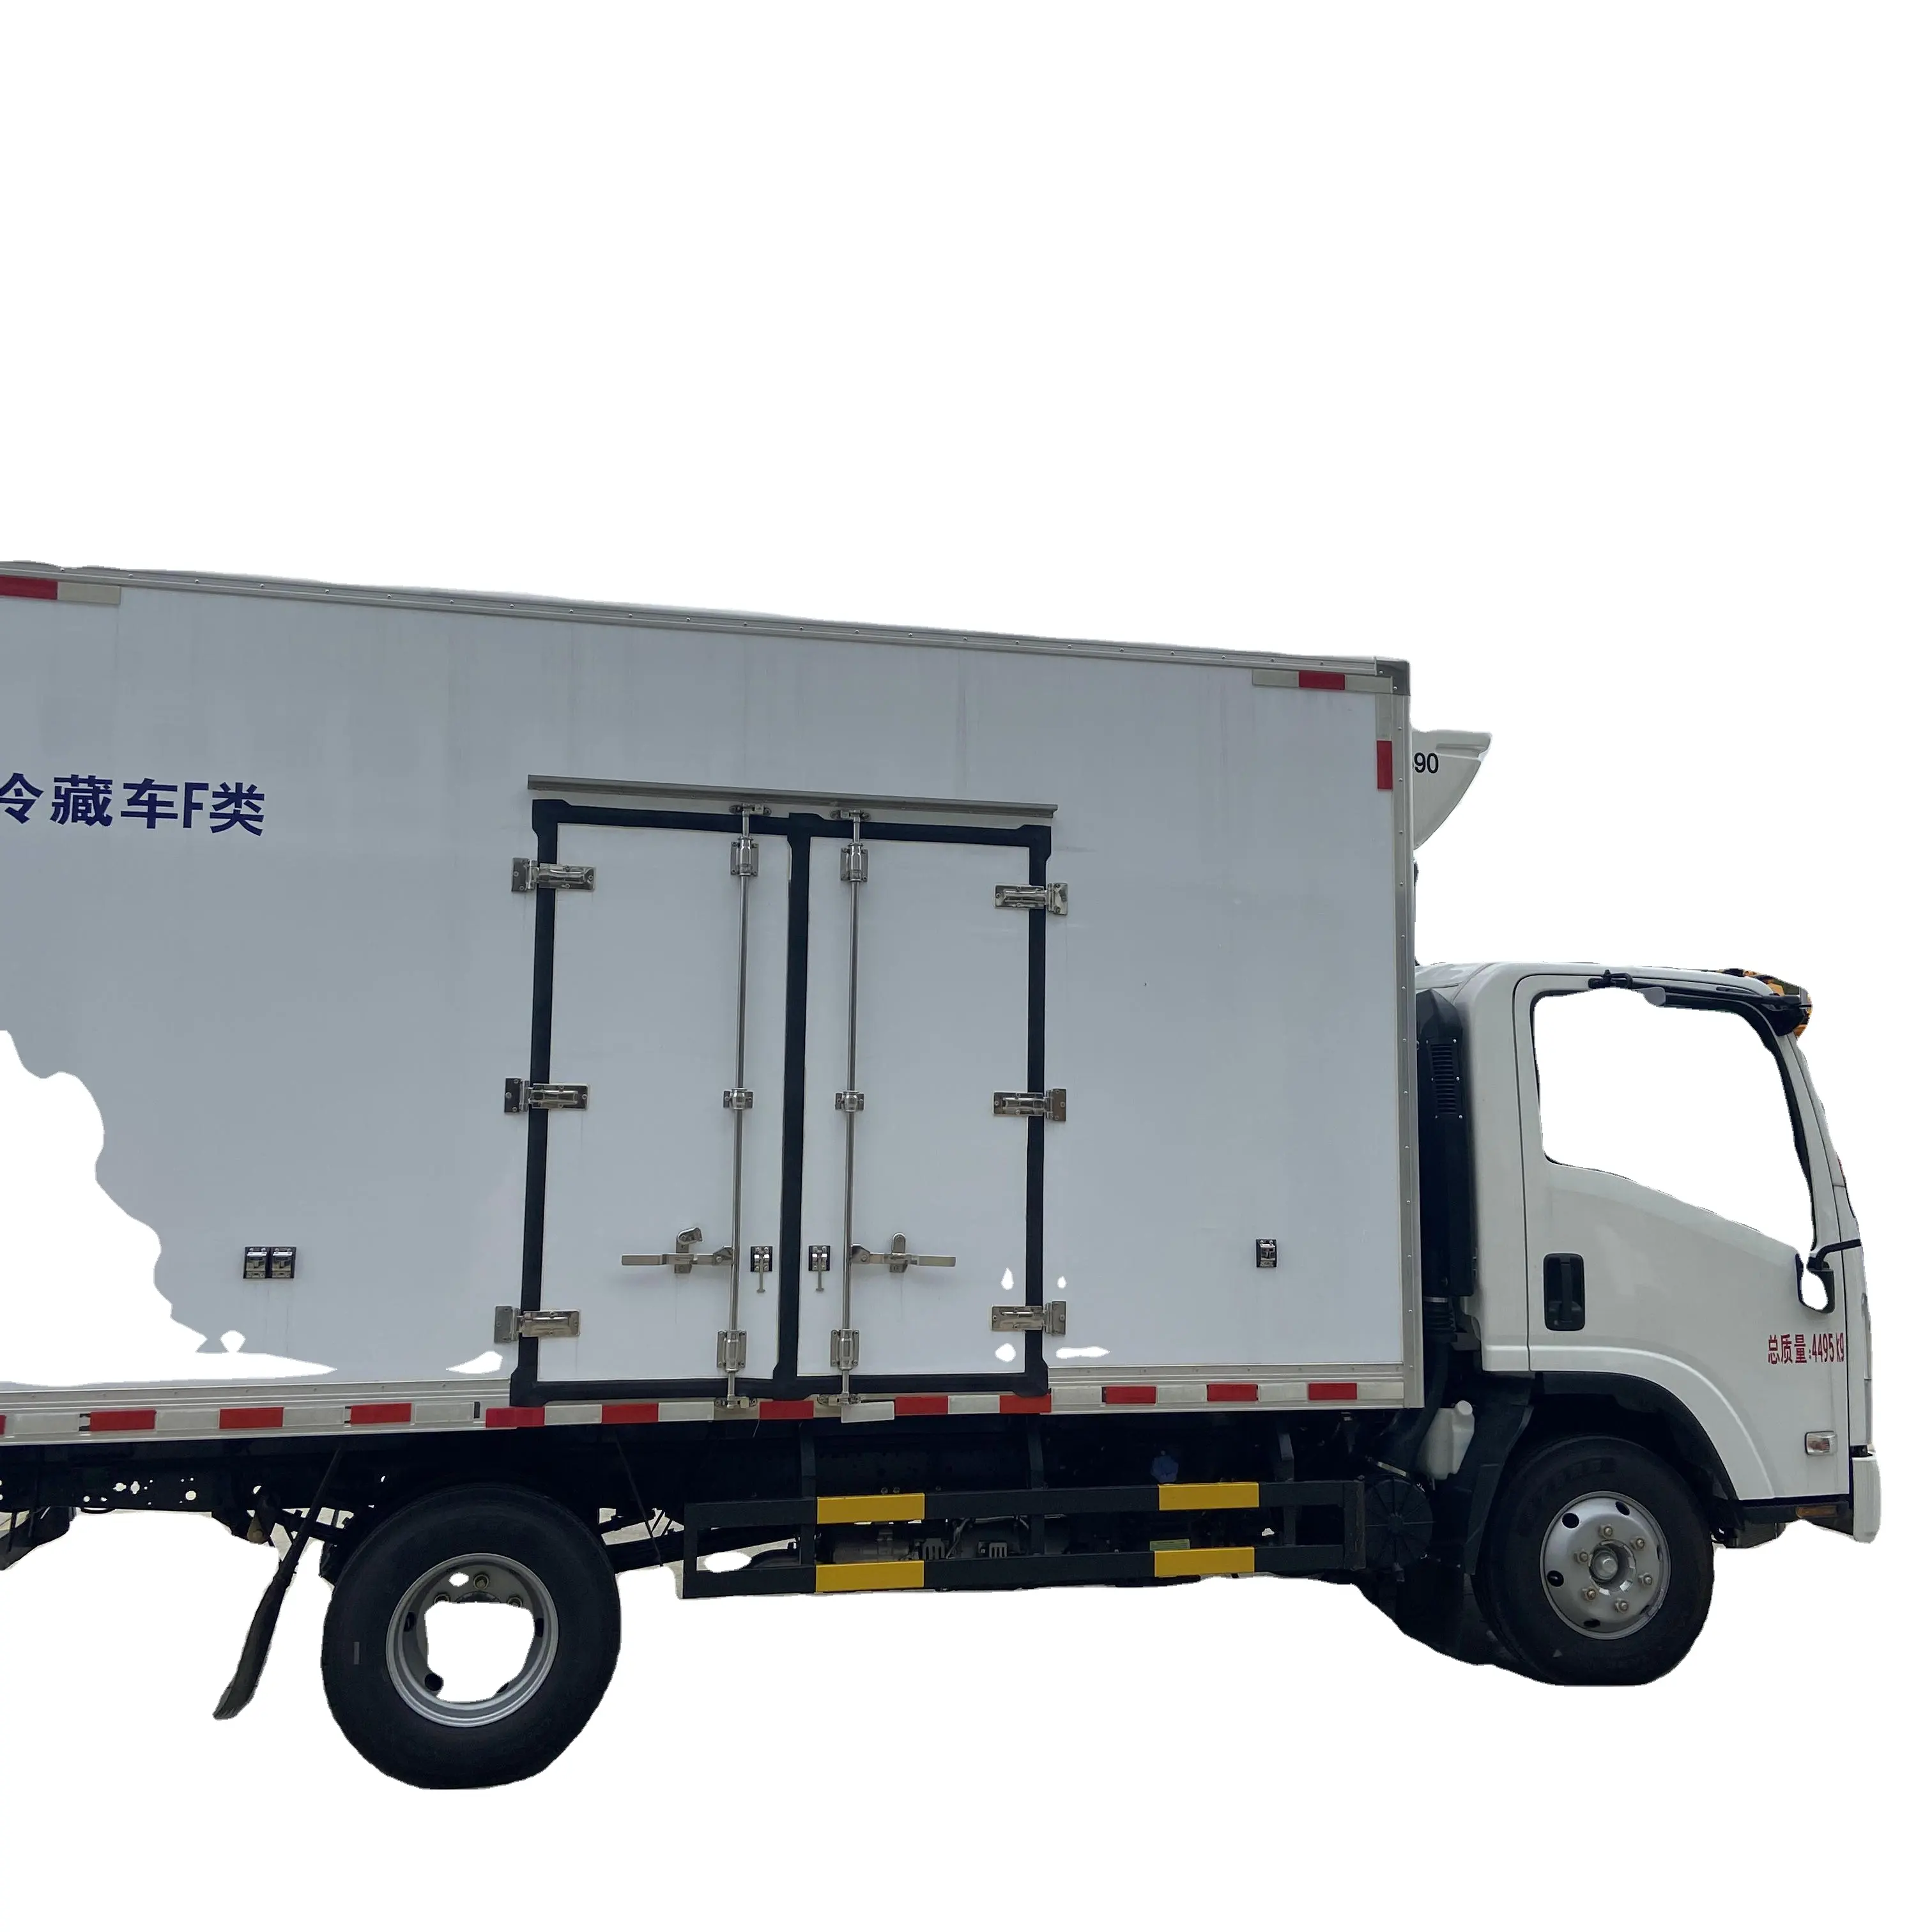 Yüksek performans 4*2 ISUZU elektrikli soğutmalı kamyon dondurucu Van kutu kamyon et meyve sebze ulaşım için